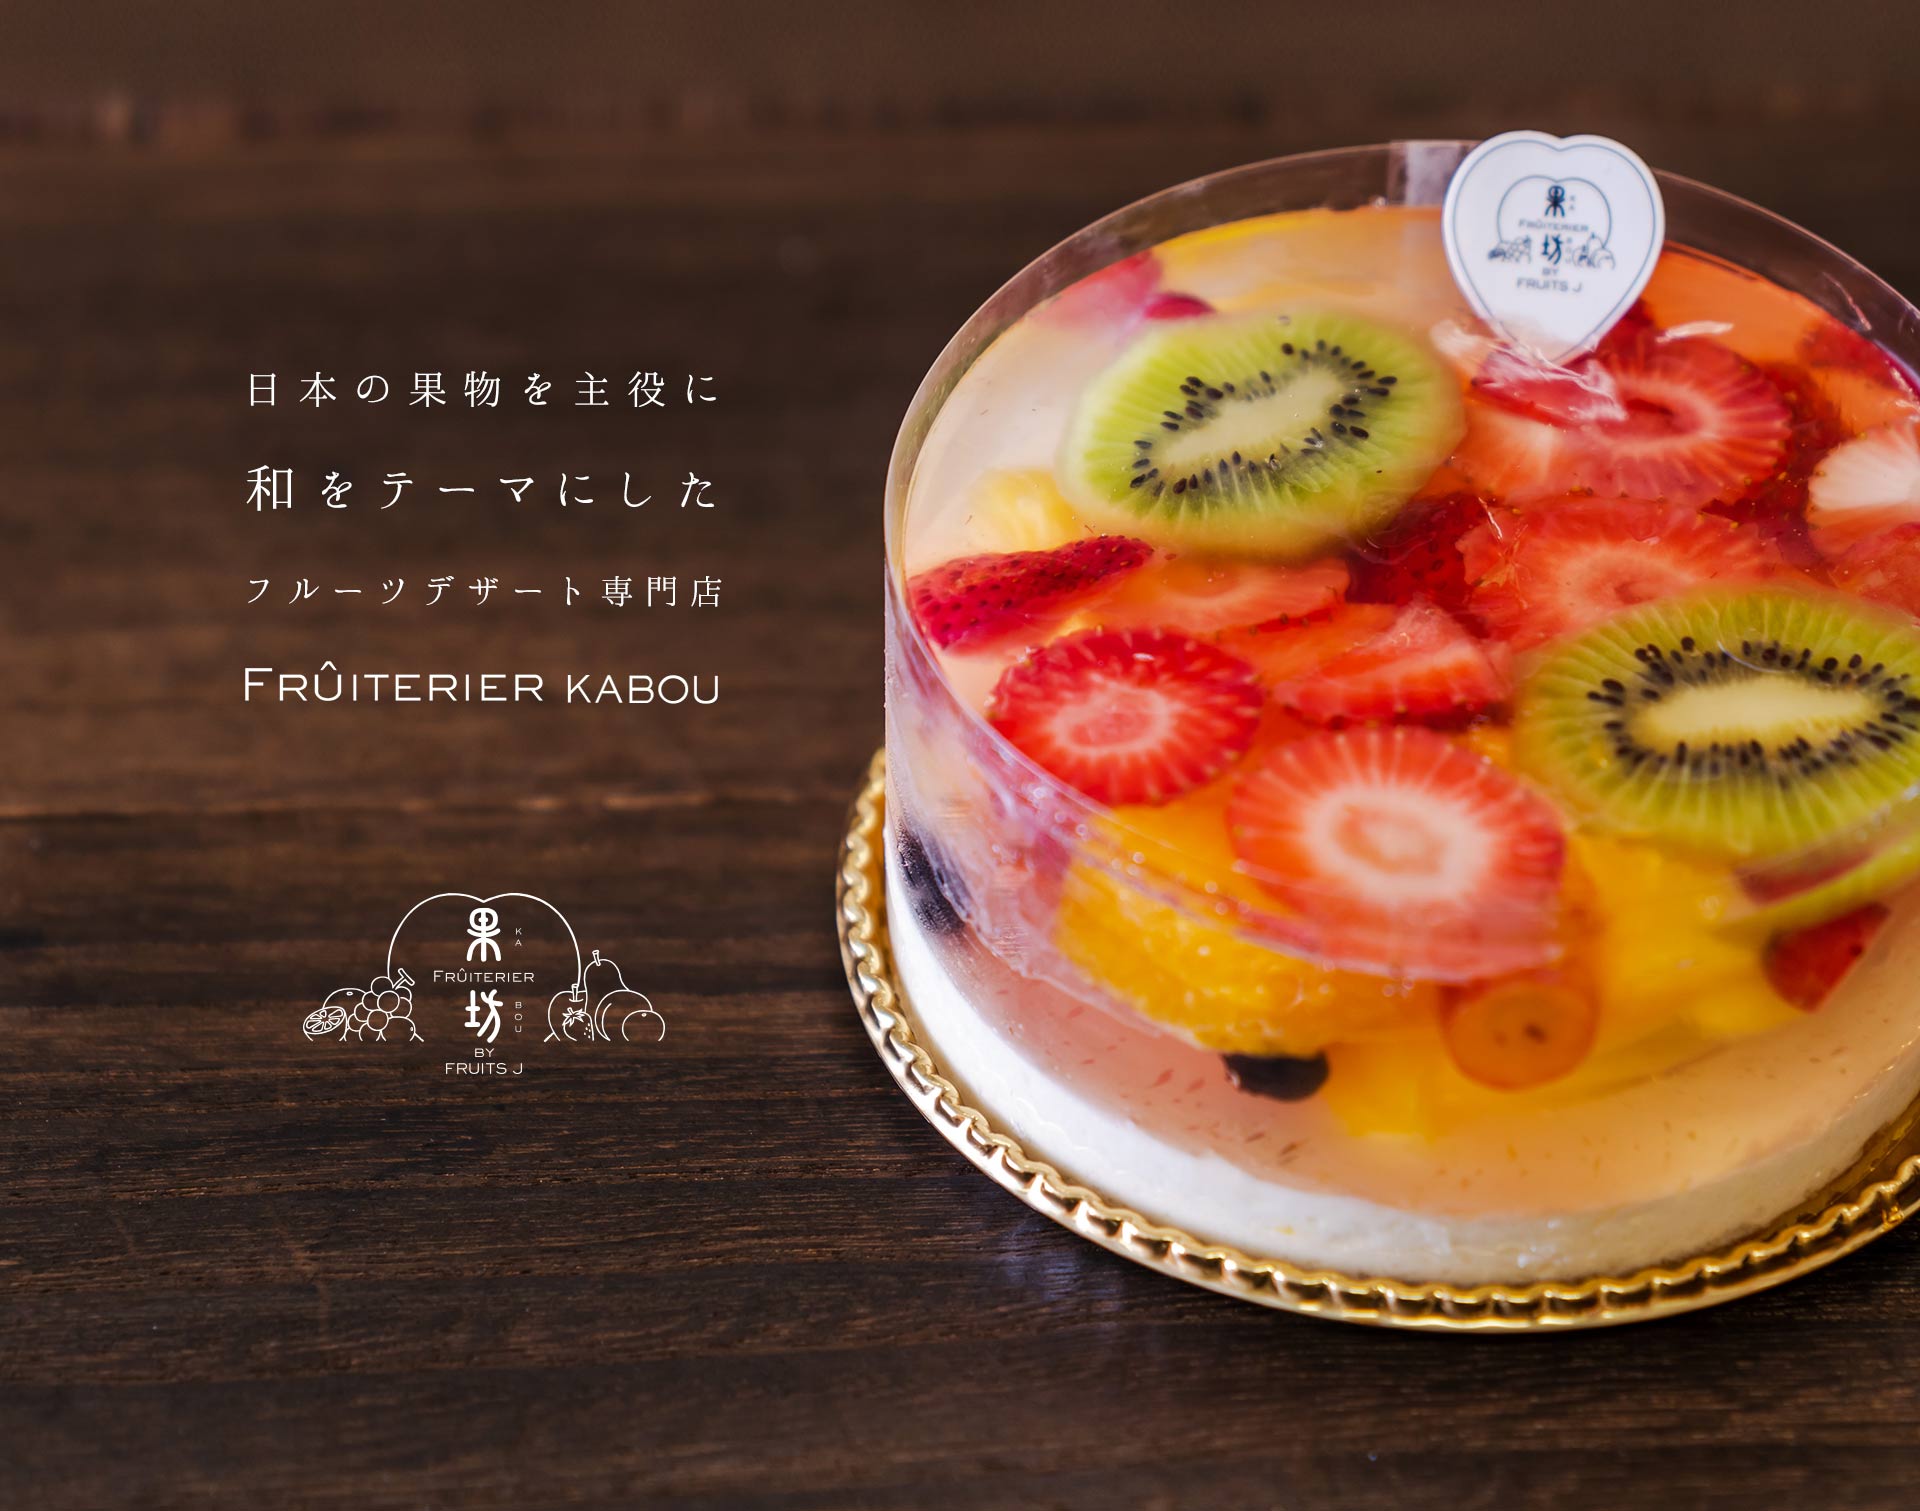 日本の果物を主役に、和をテーマにしたフルーツデザート専門店。 FRUITERIER KABOU